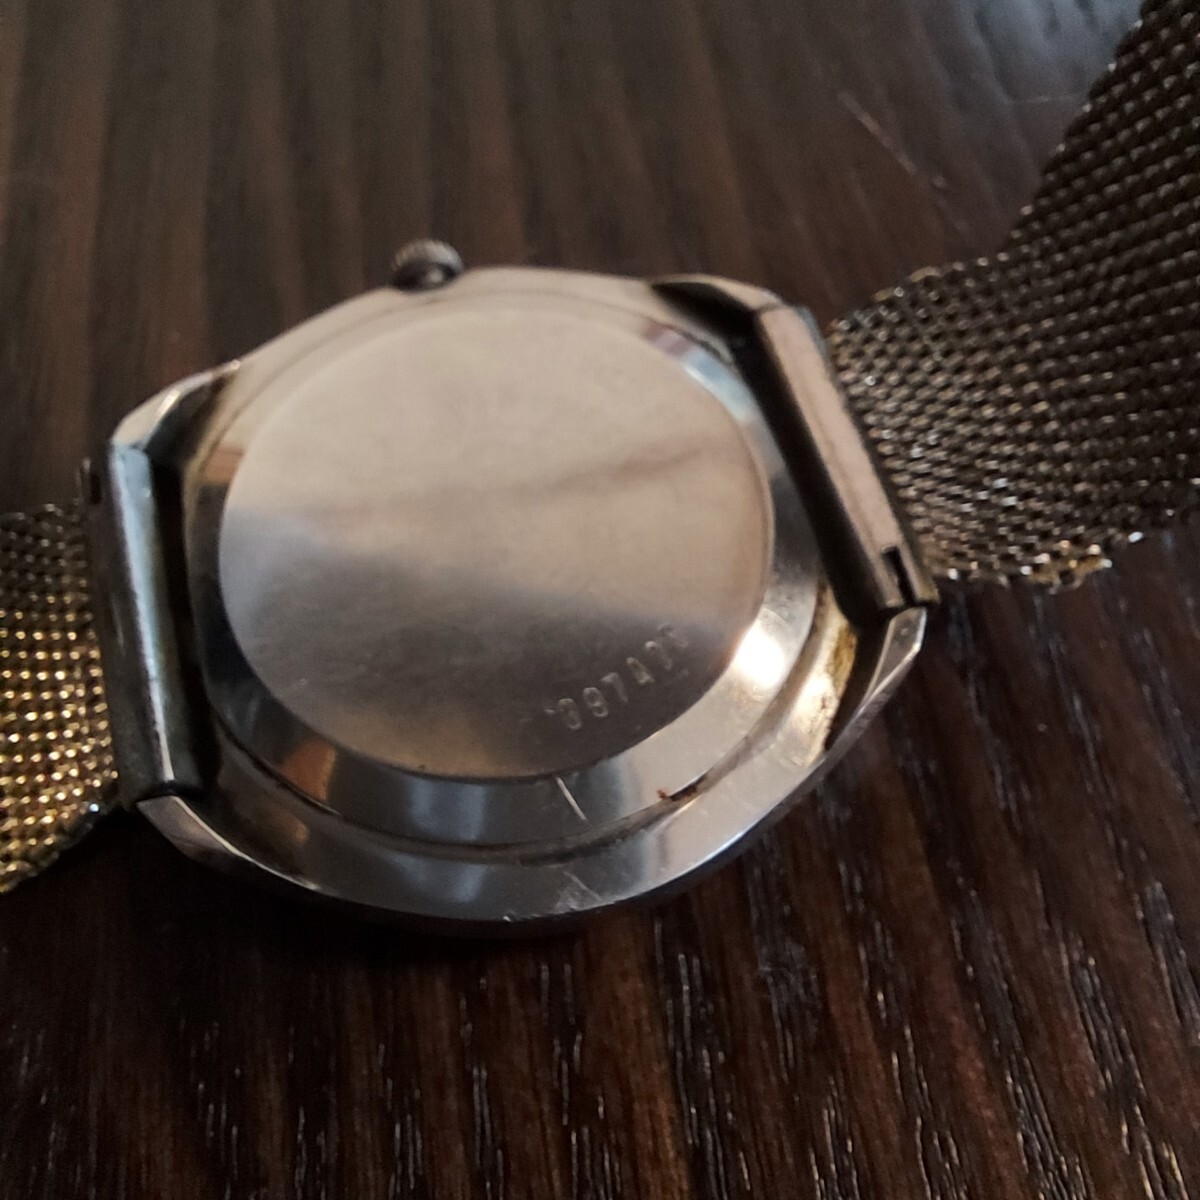 オリエントファインネス ウルトラマチック 35石 自動巻き 腕時計 orient fineness オートマチックの画像10